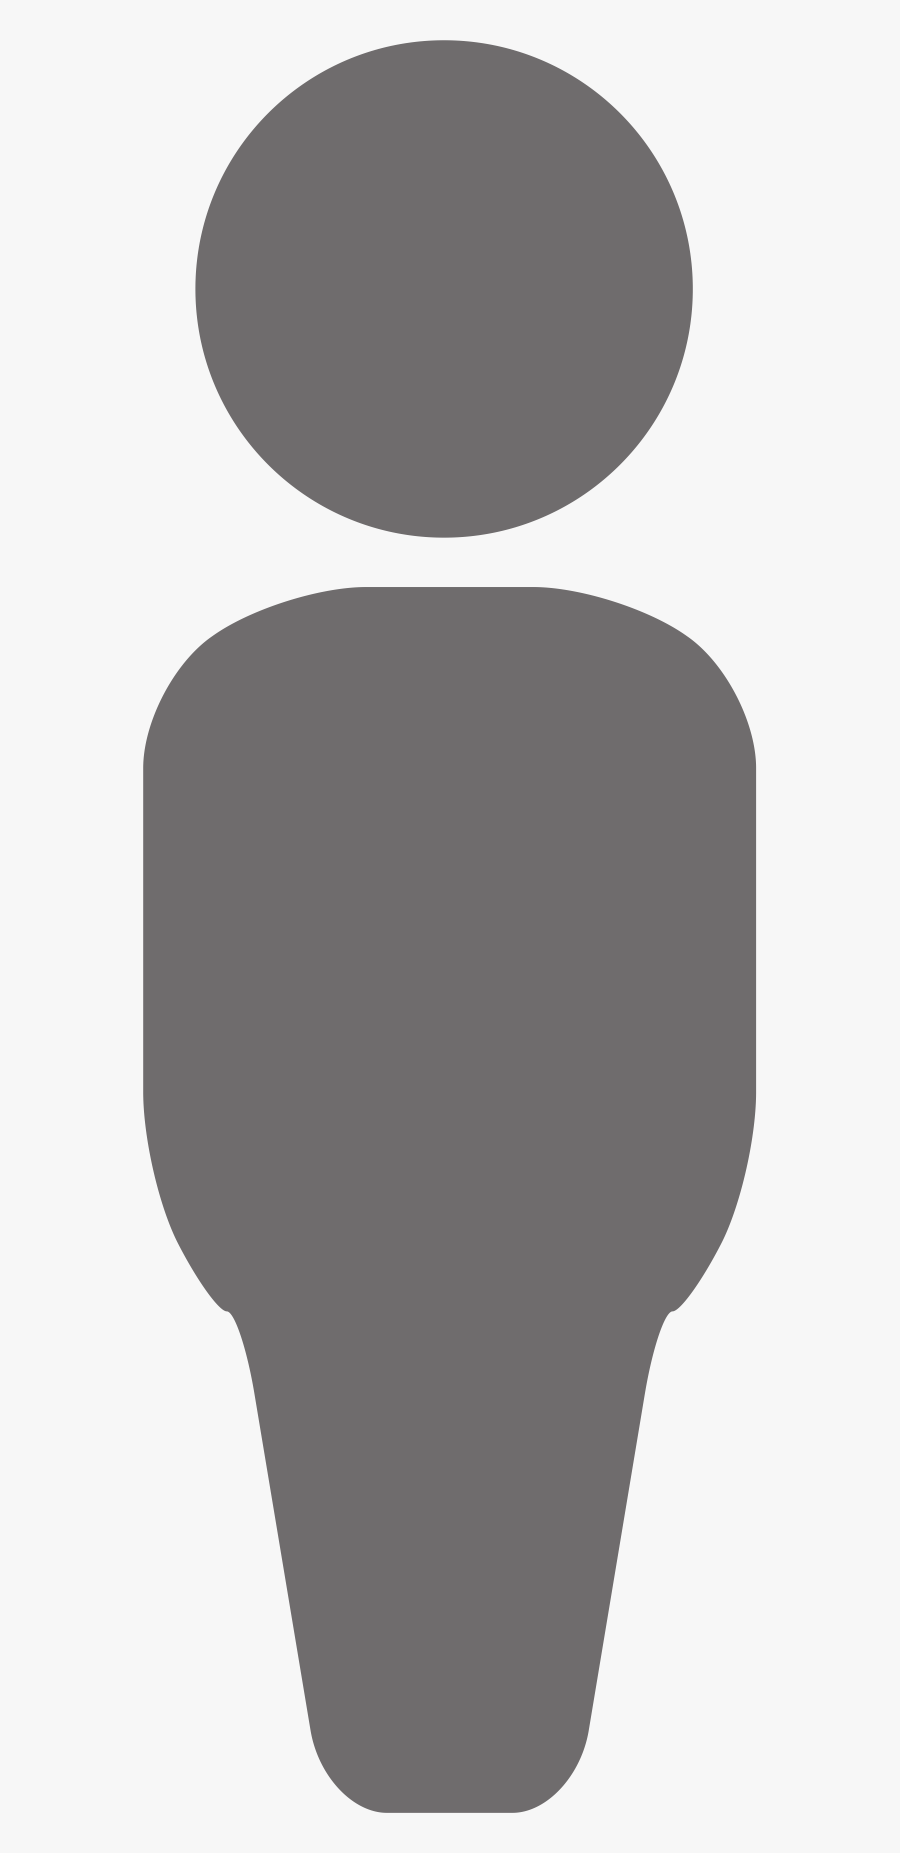 Clipart - Person Icon - Person Icon Clip Art, Transparent Clipart